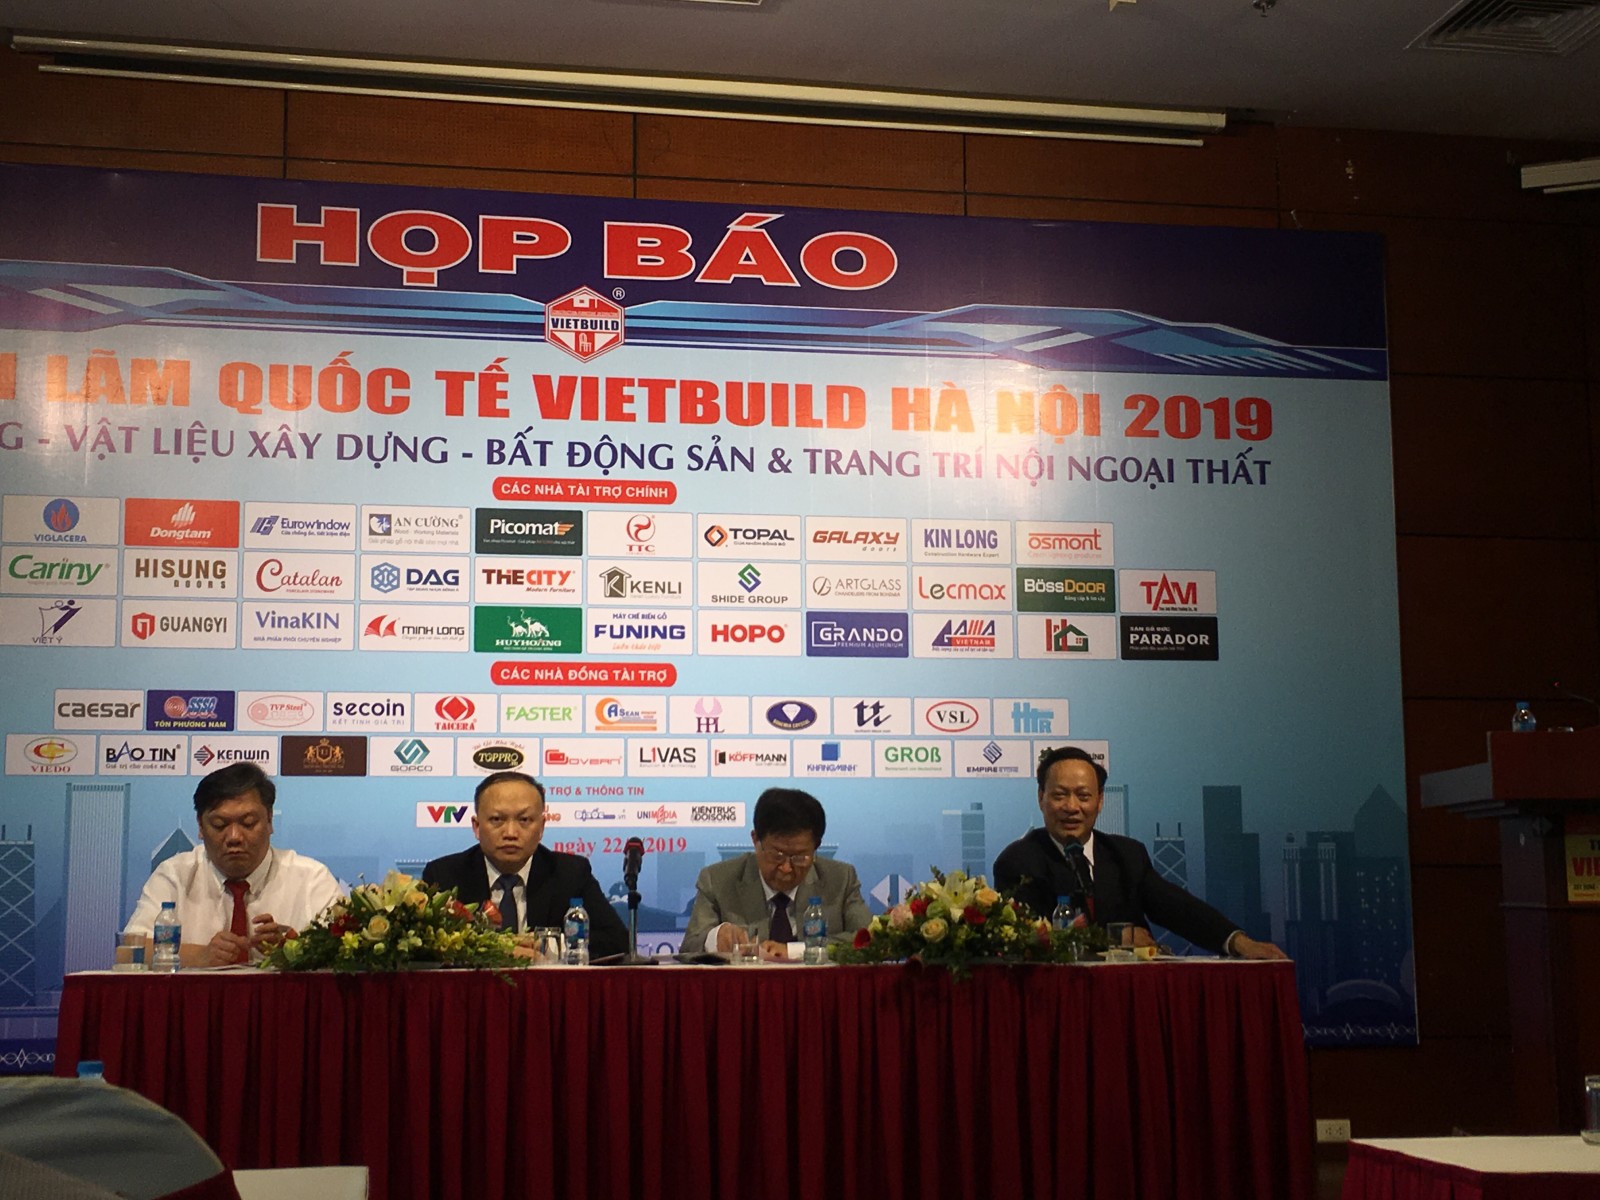 Toàn cảnh sự kiện họp báo Vietbuil Hà Nội năm 2019 lần 1